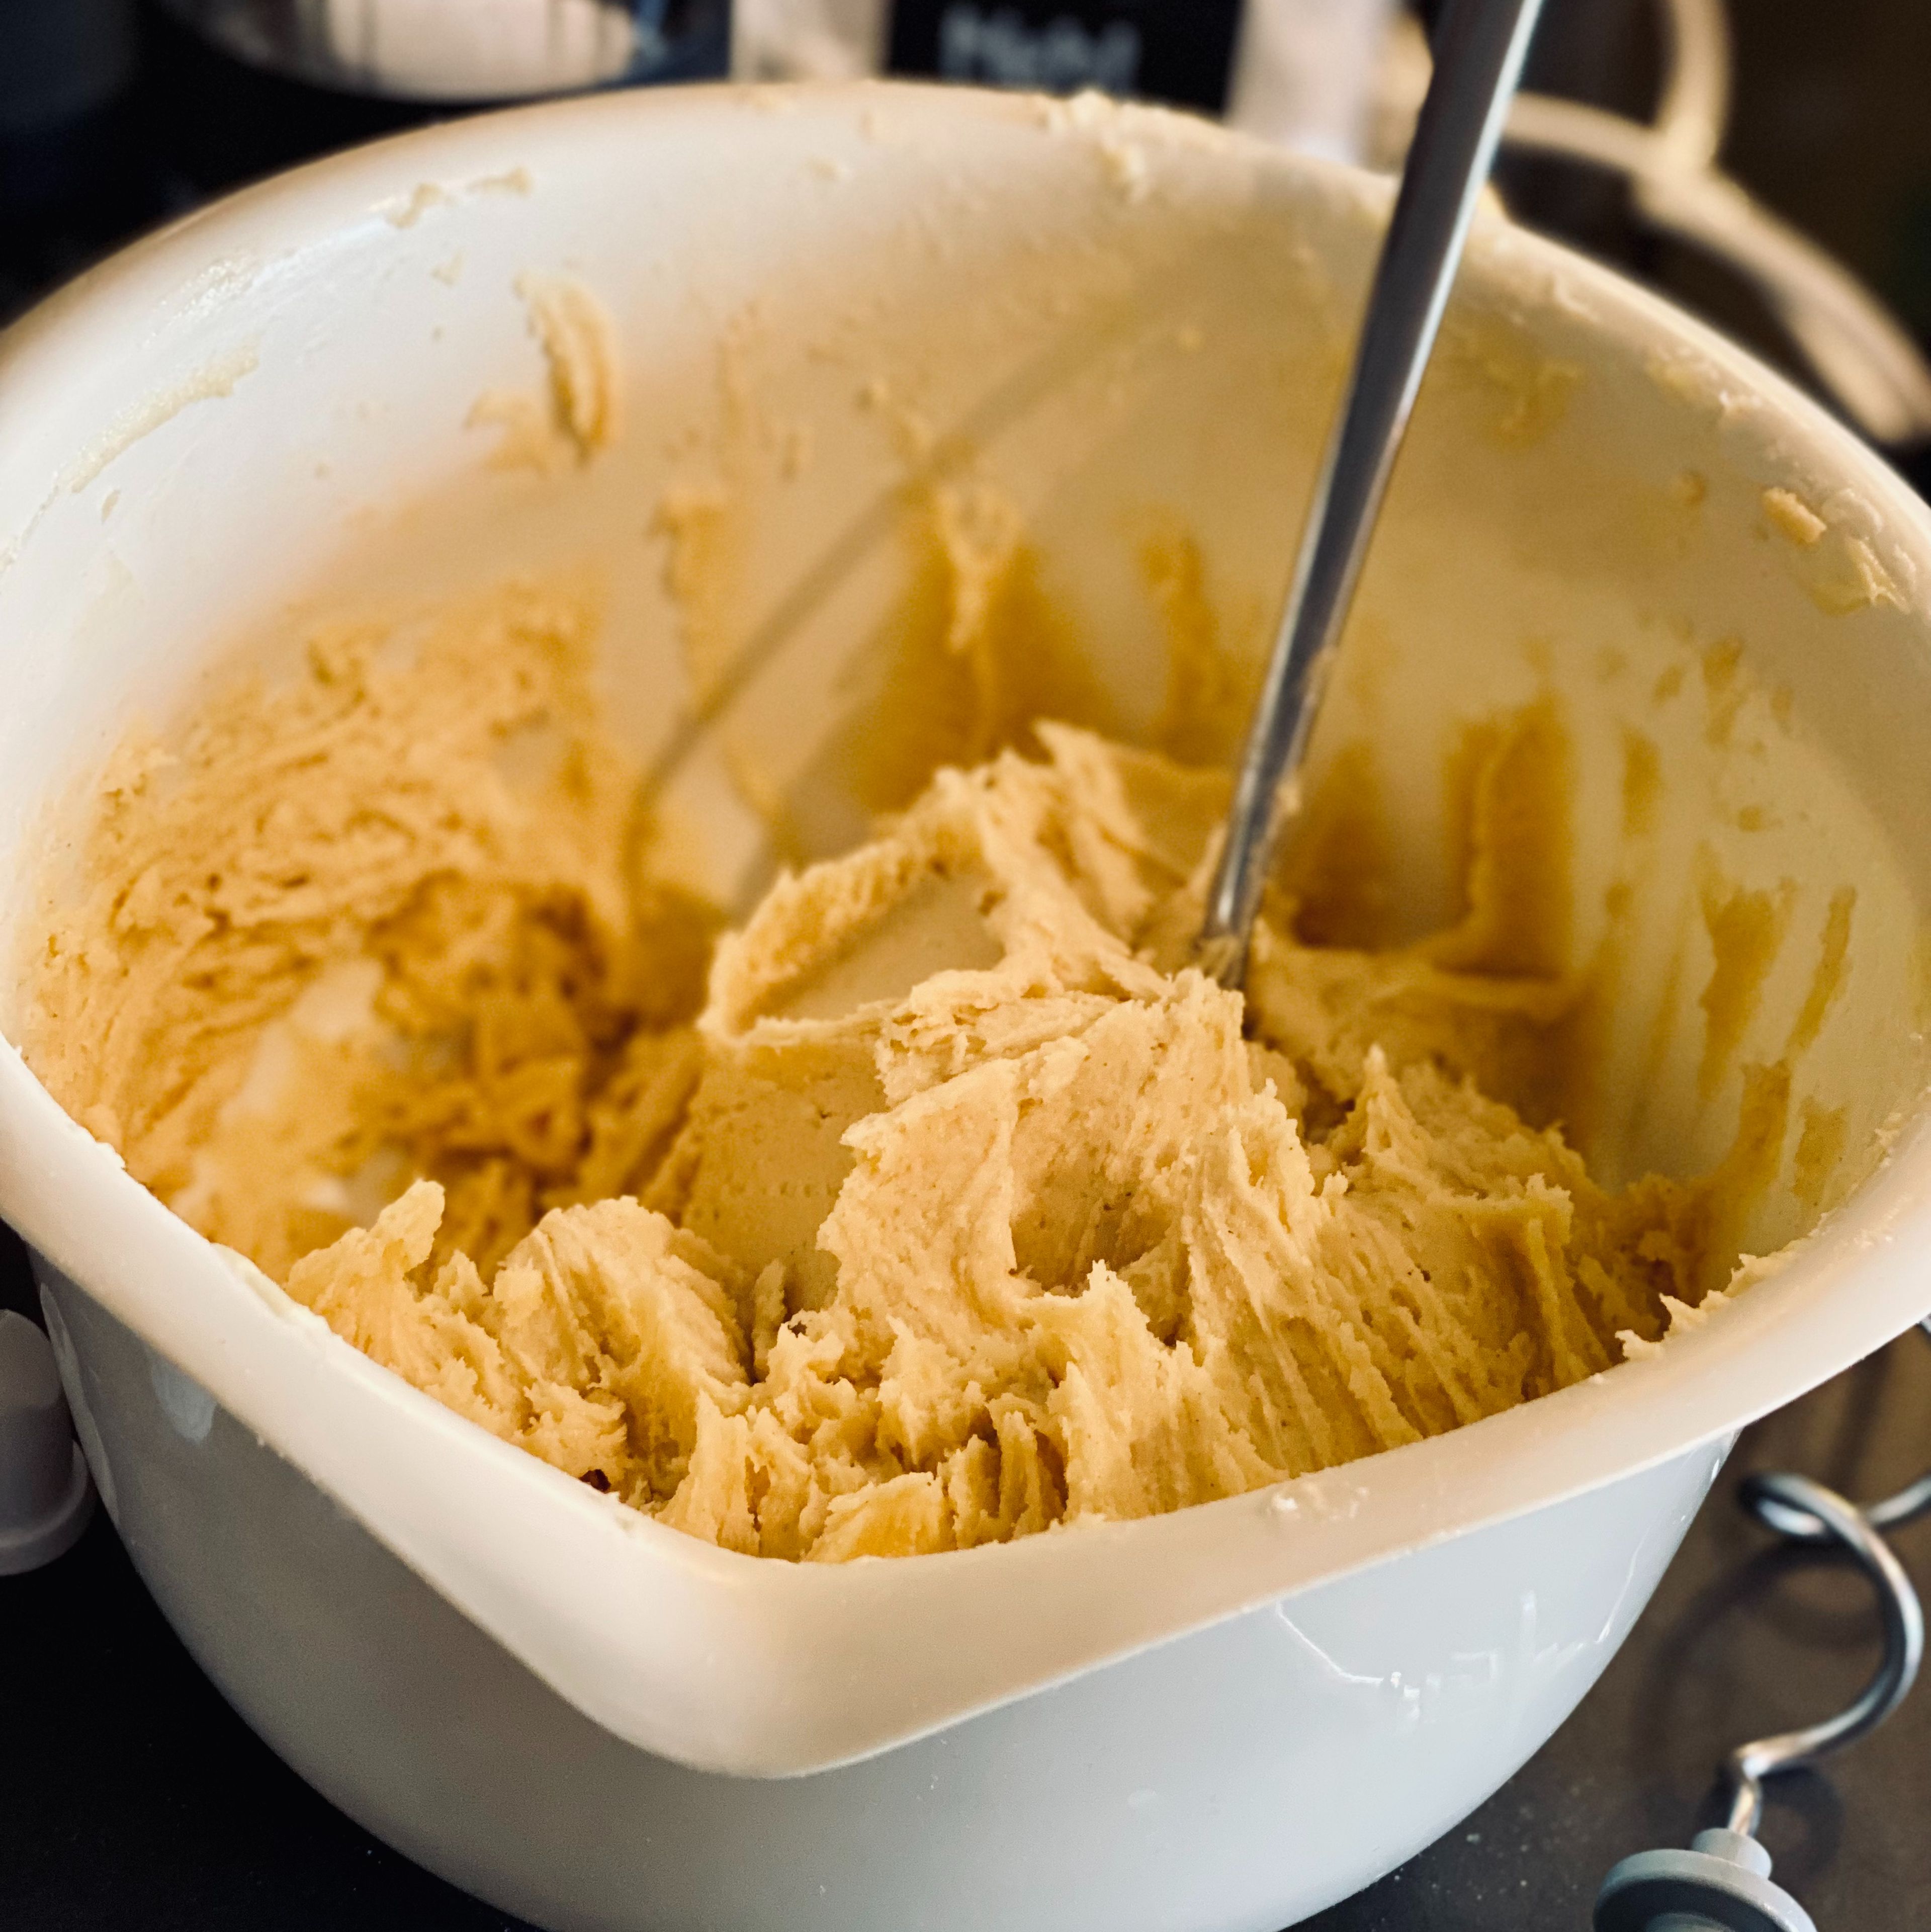 Den Backofen auf 160° Umluft vorheizen, Die Butter (zimmerwarm) mit dem Handrührgerät schaumig schlagen. Puderzucker, Salz und Zimt dazugeben und weiter schlagen. Mehl und Eier dazugeben und einen Teig daraus mixen.